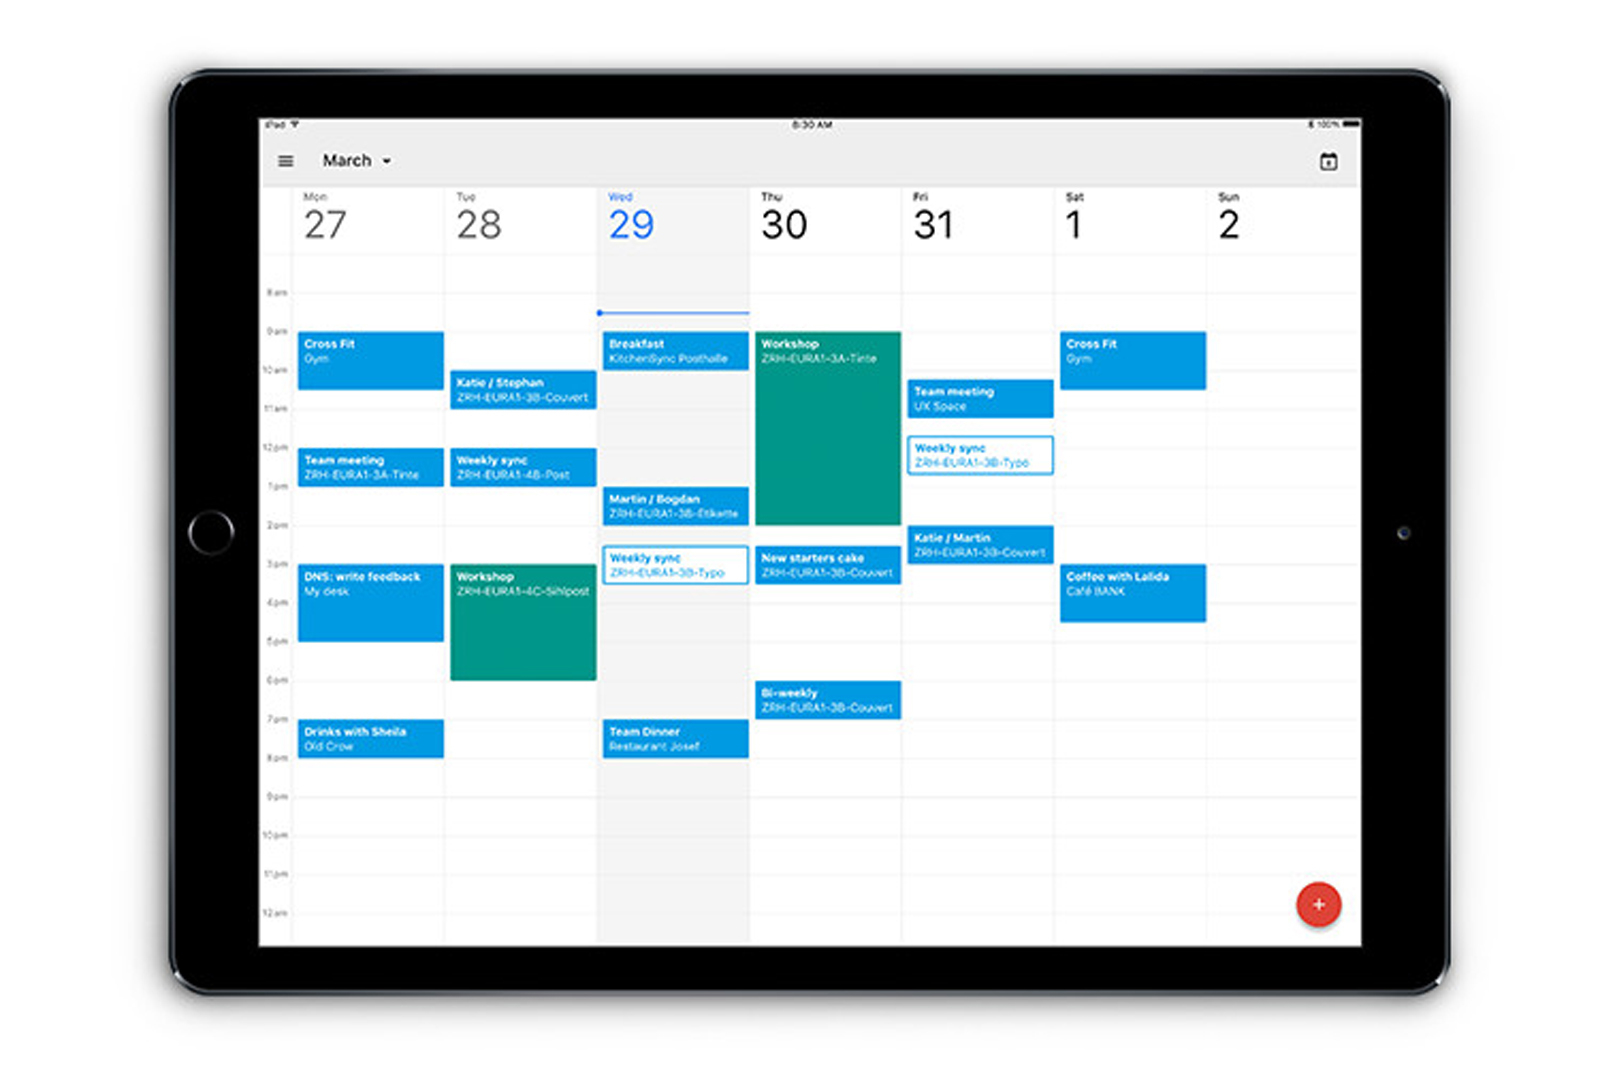 Google 自家的日历 app 更懂得适应你的 iPad 屏幕了